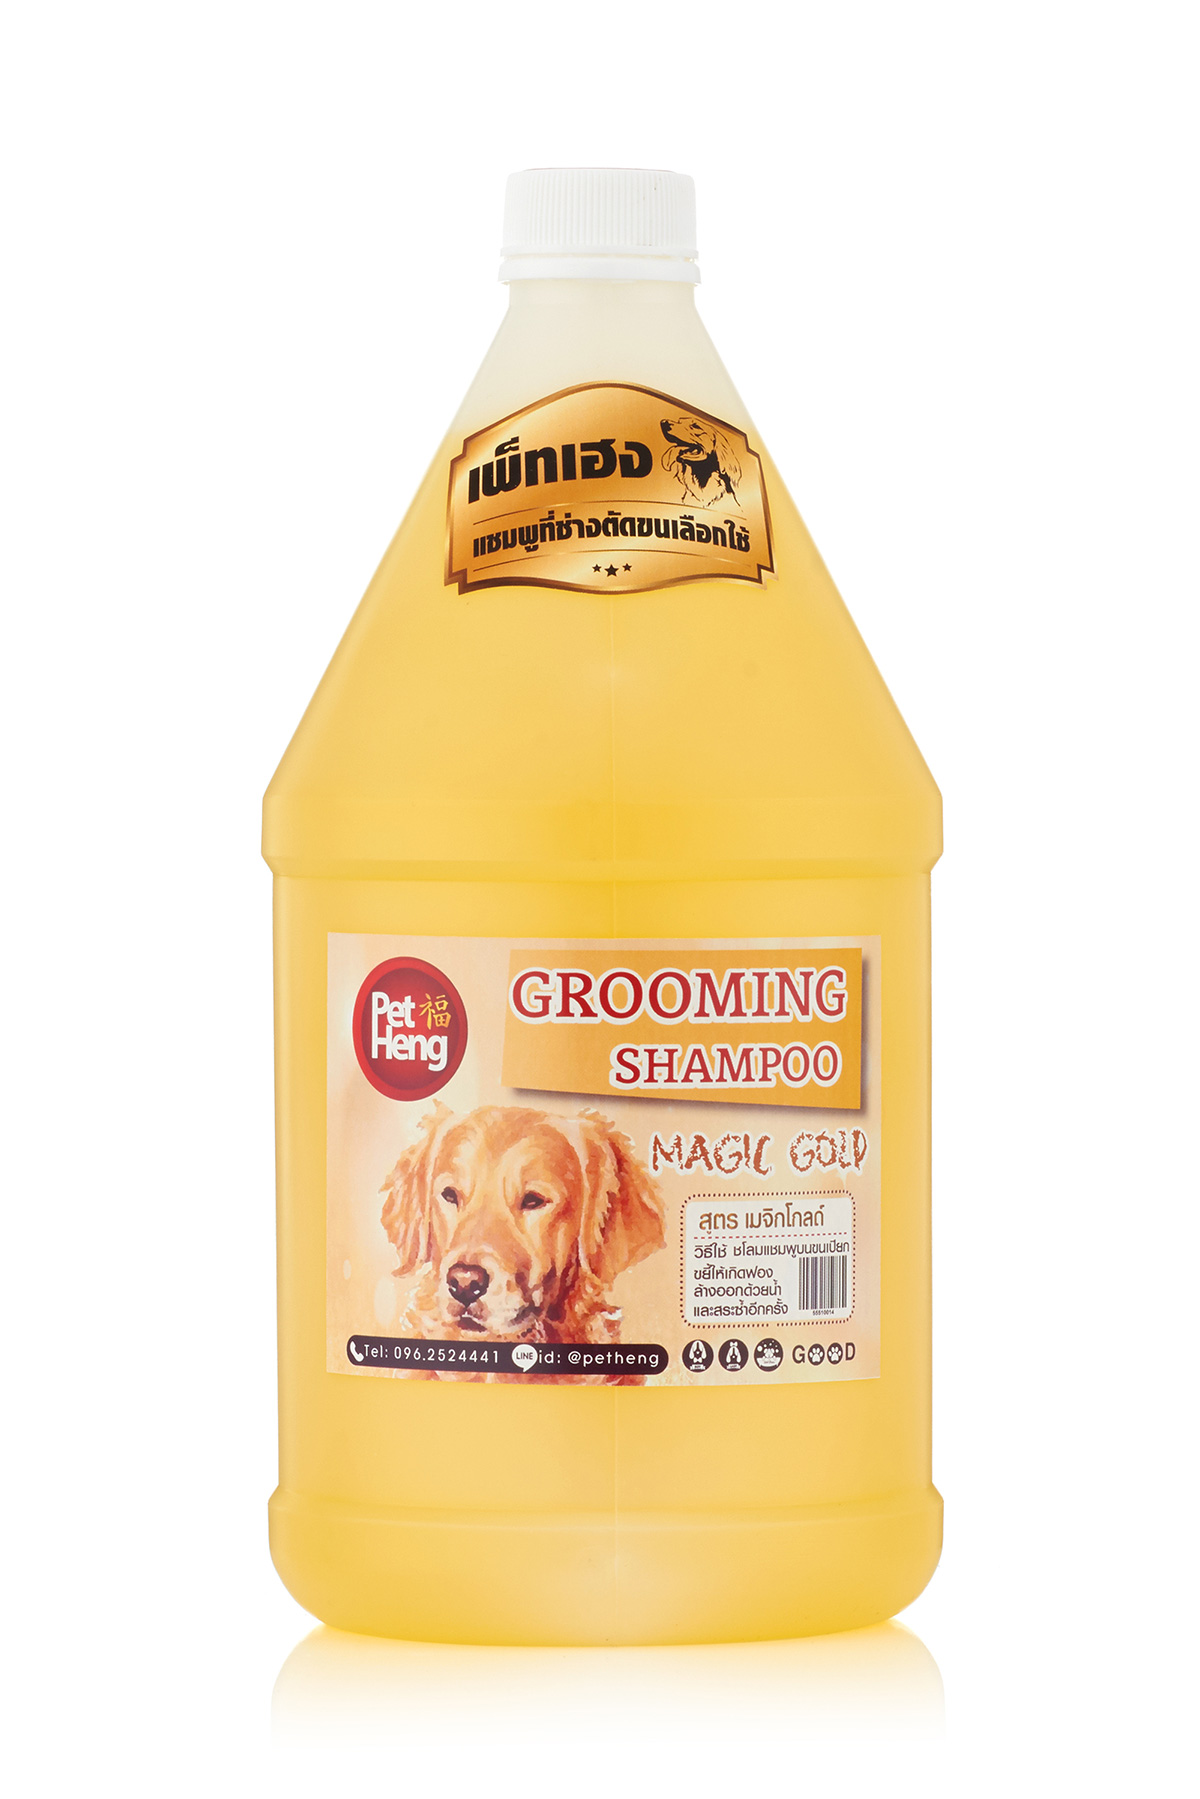 [1 แกลอน ] แชมพูสุนัขป้องกัน เห็บหมัด สำหรับสุนัขทุกสายพันธุ์ สูตรขนนุ่มหอมนาน Petheng Dog Shampoo